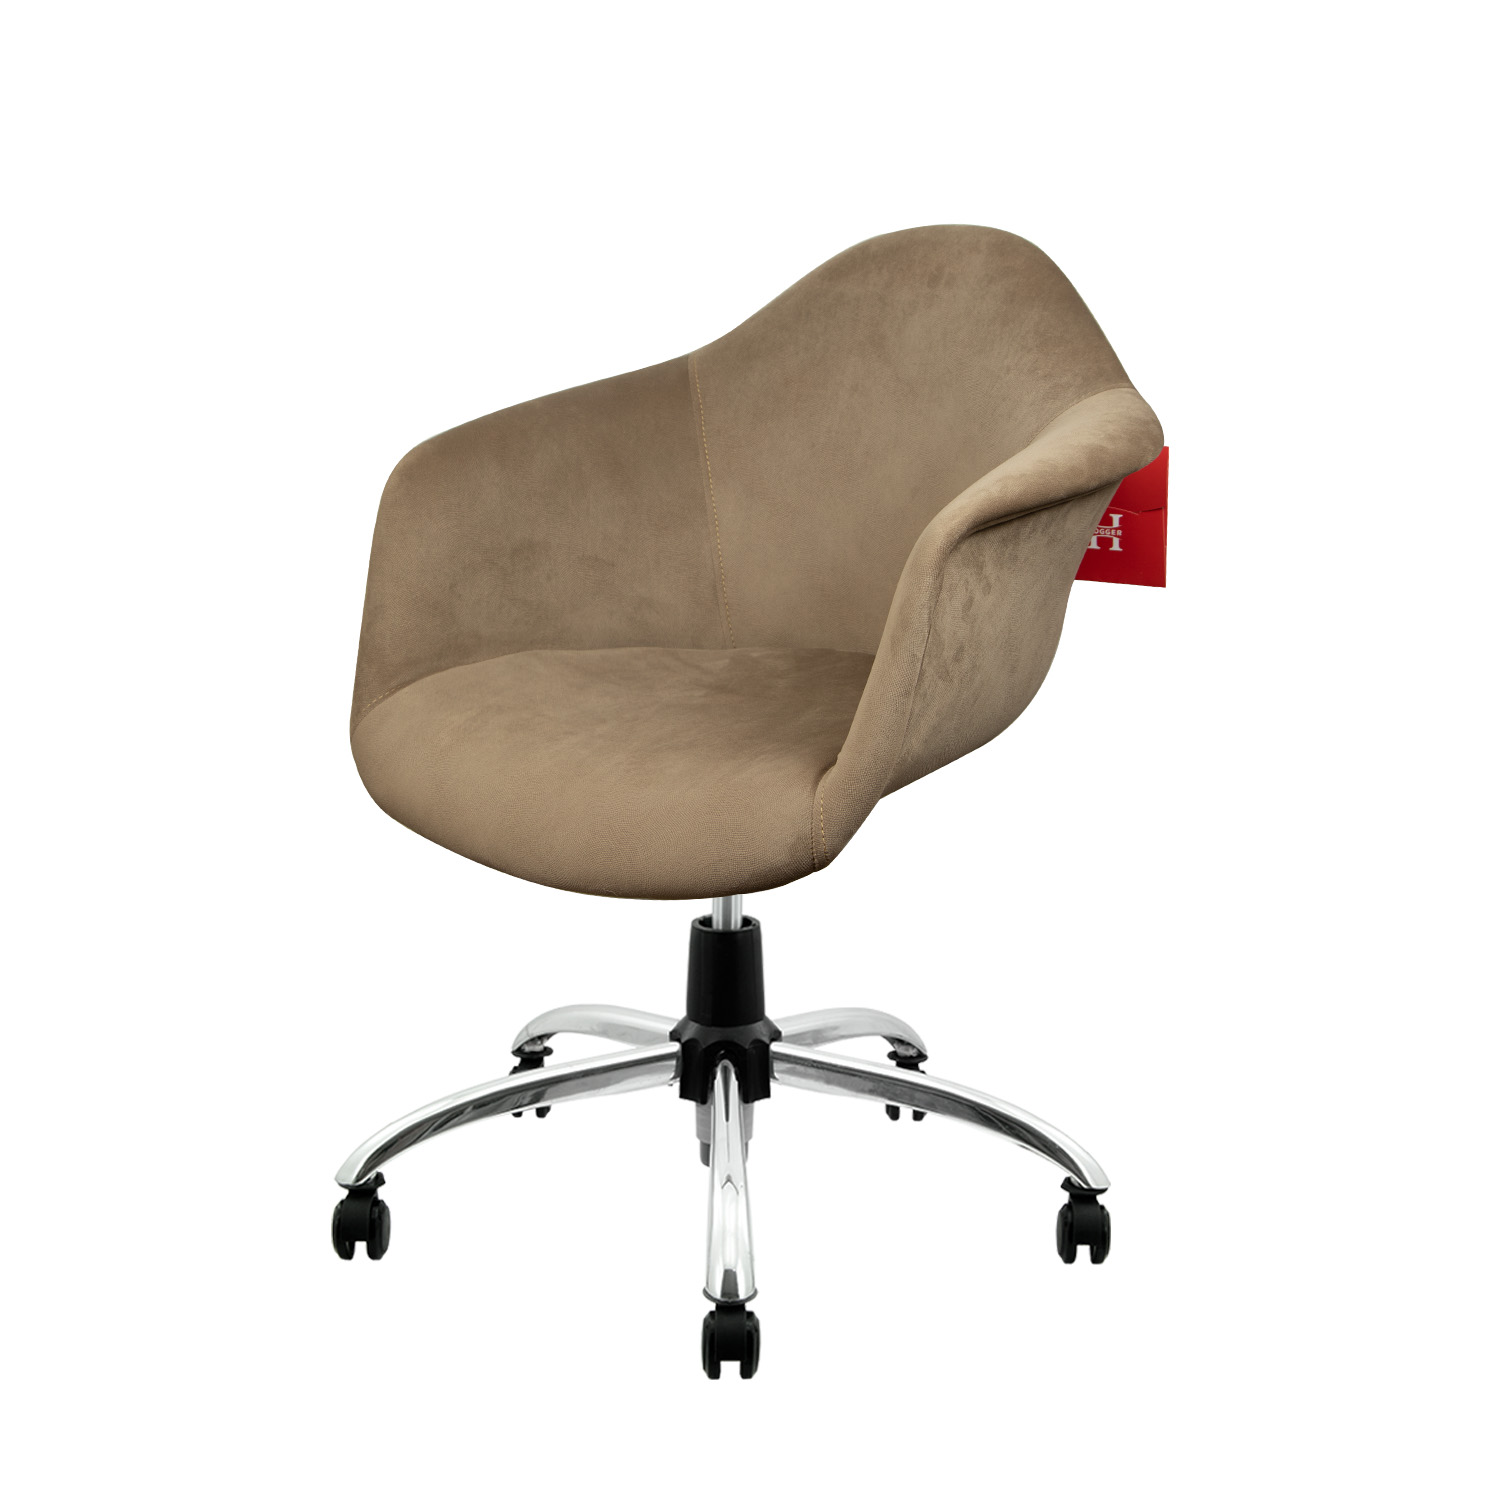 نکته خرید - قیمت روز صندلی اداری هوگر مدل KH318 طرح پارچه ای خرید